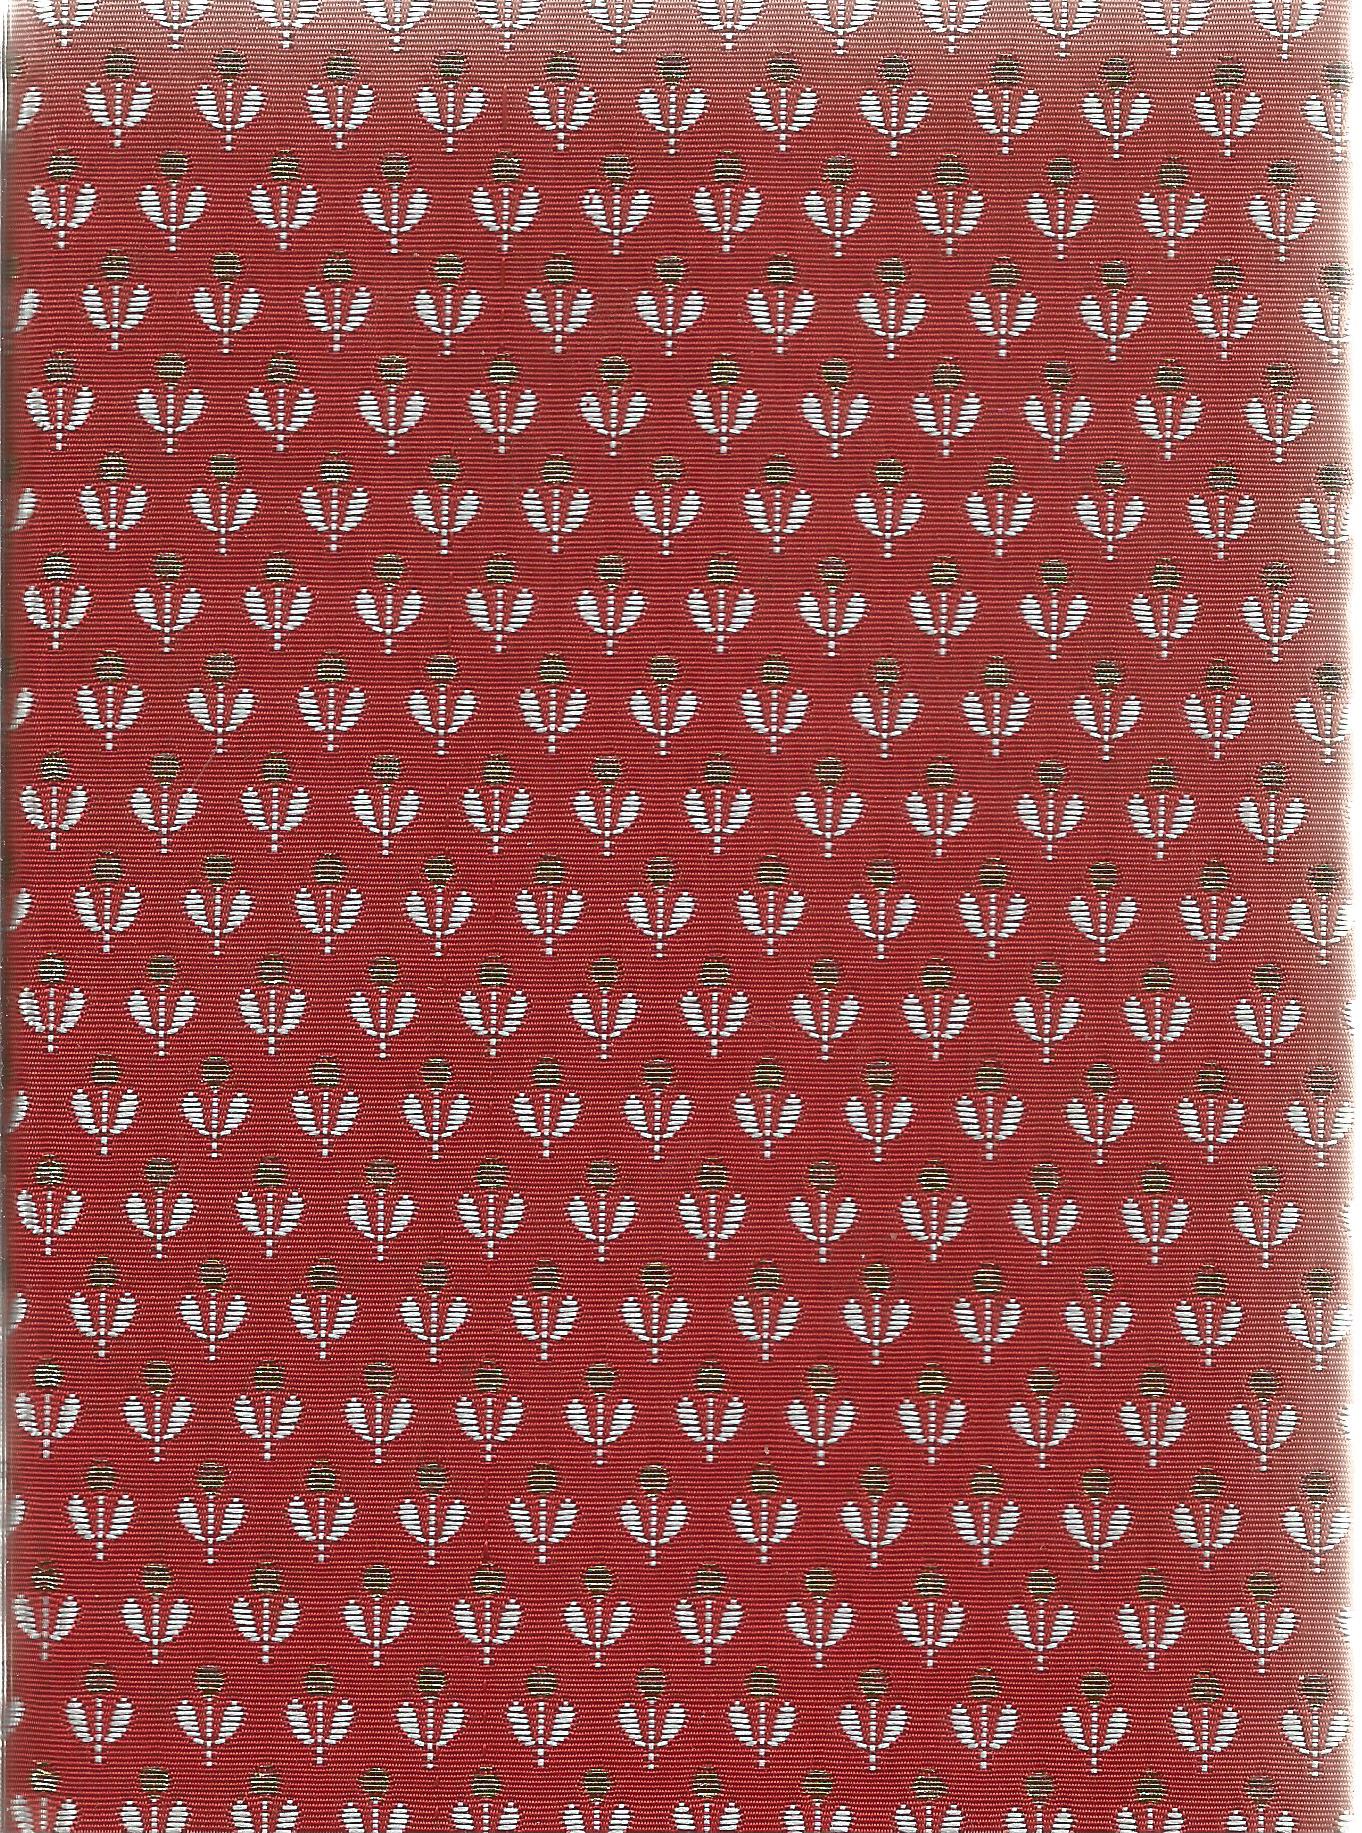 Rubaiyat of Omar Khayyam The first version of Edward Fitzgerald 1955 Boxed Hardback Book published - Image 2 of 3